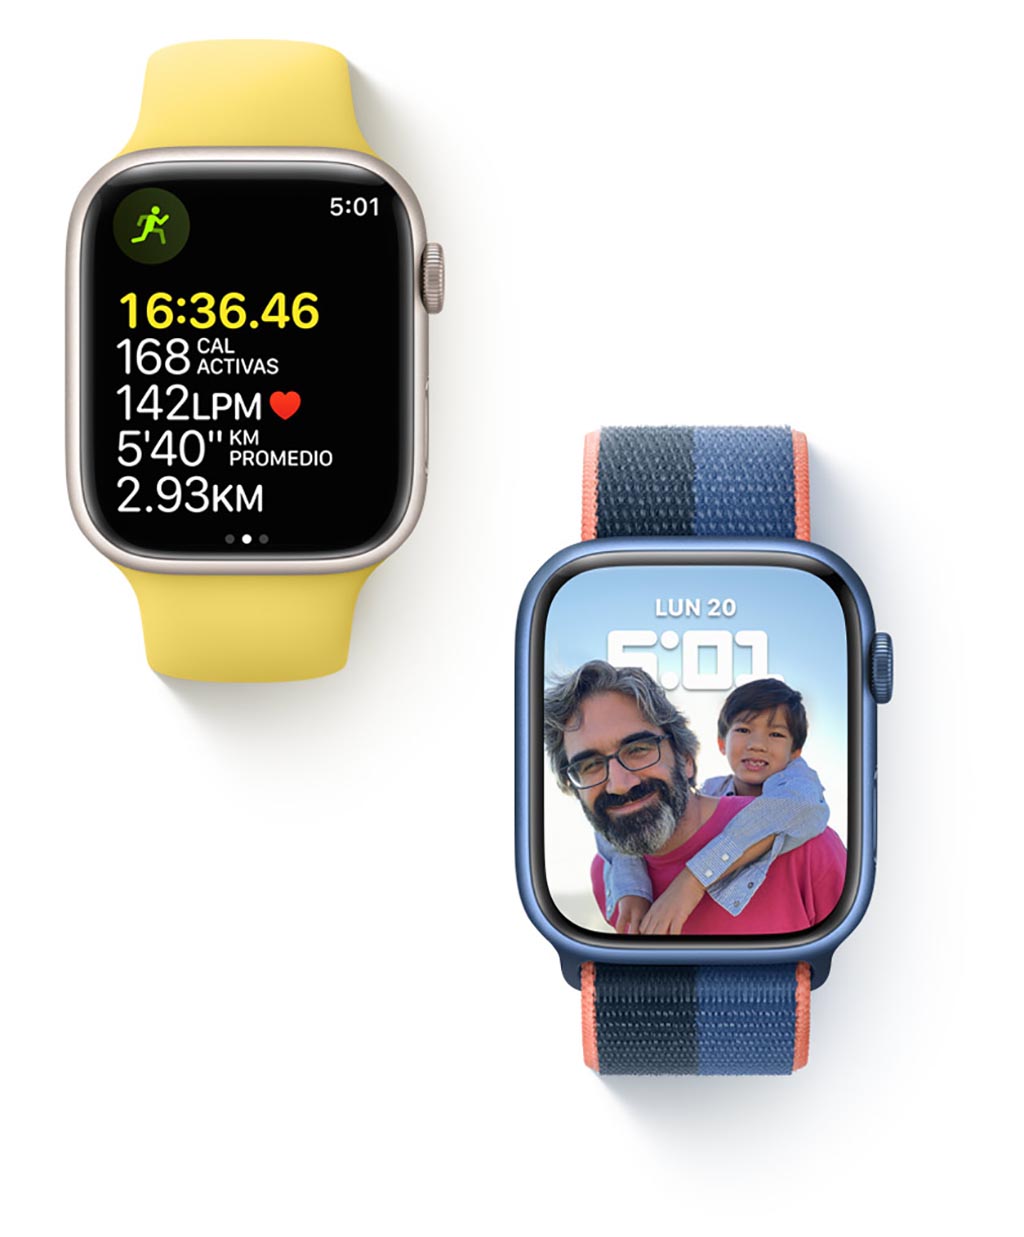 Mejores gadgets de Apple para Día del padre: iPhone, AirPods, iPad y más 2